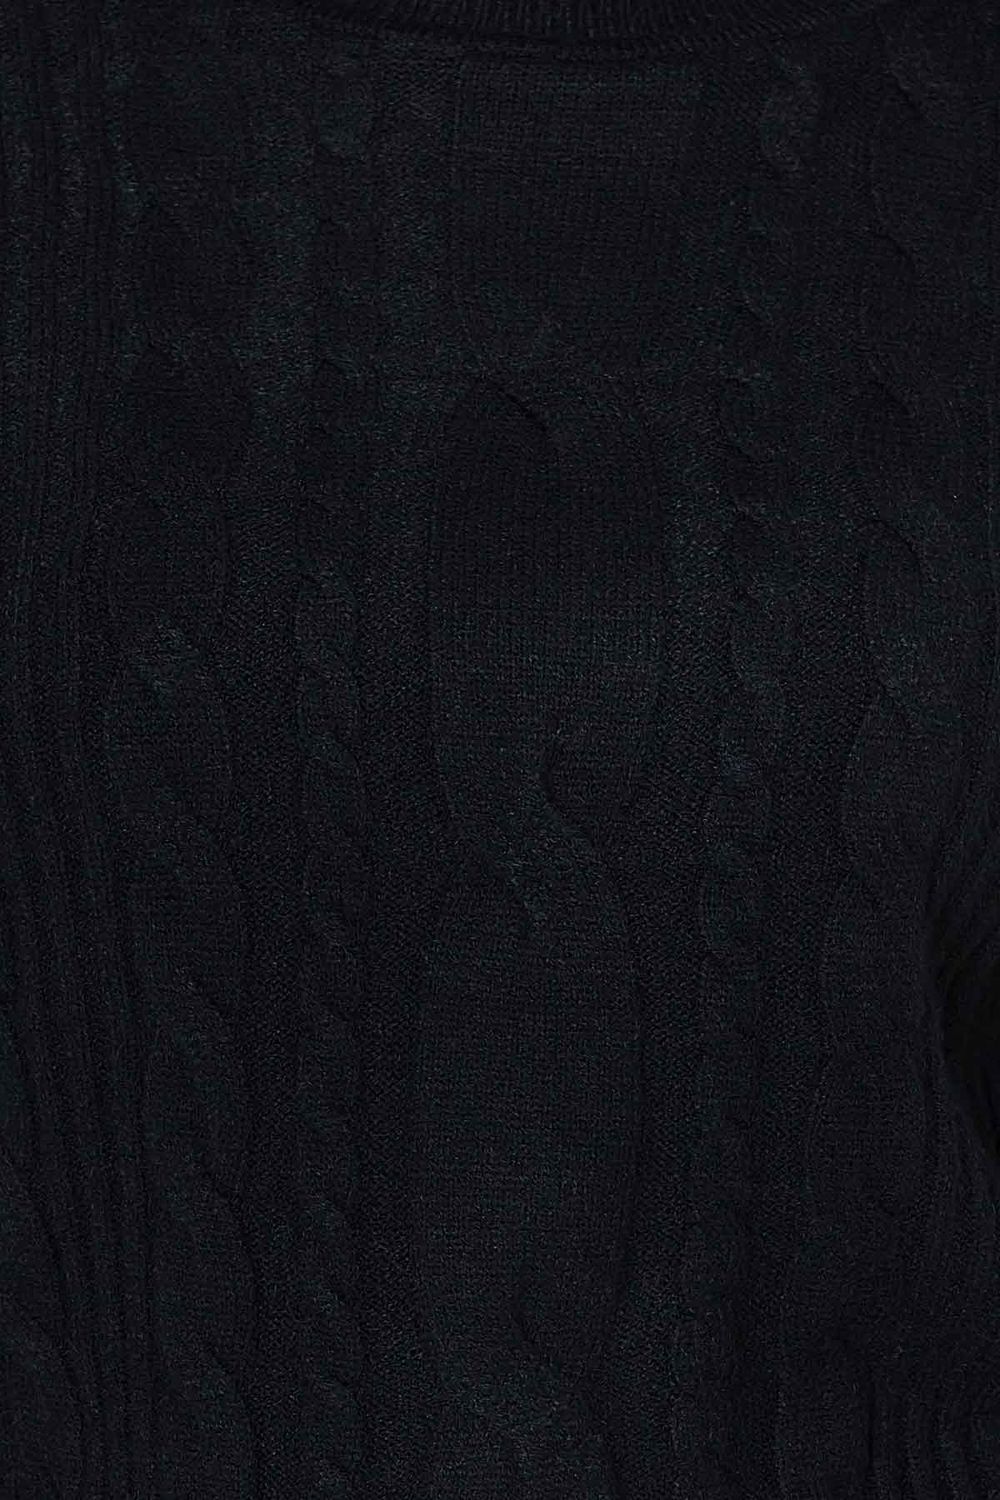 Жіночий в'язаний светр з візерунком коси чорного кольору - фото